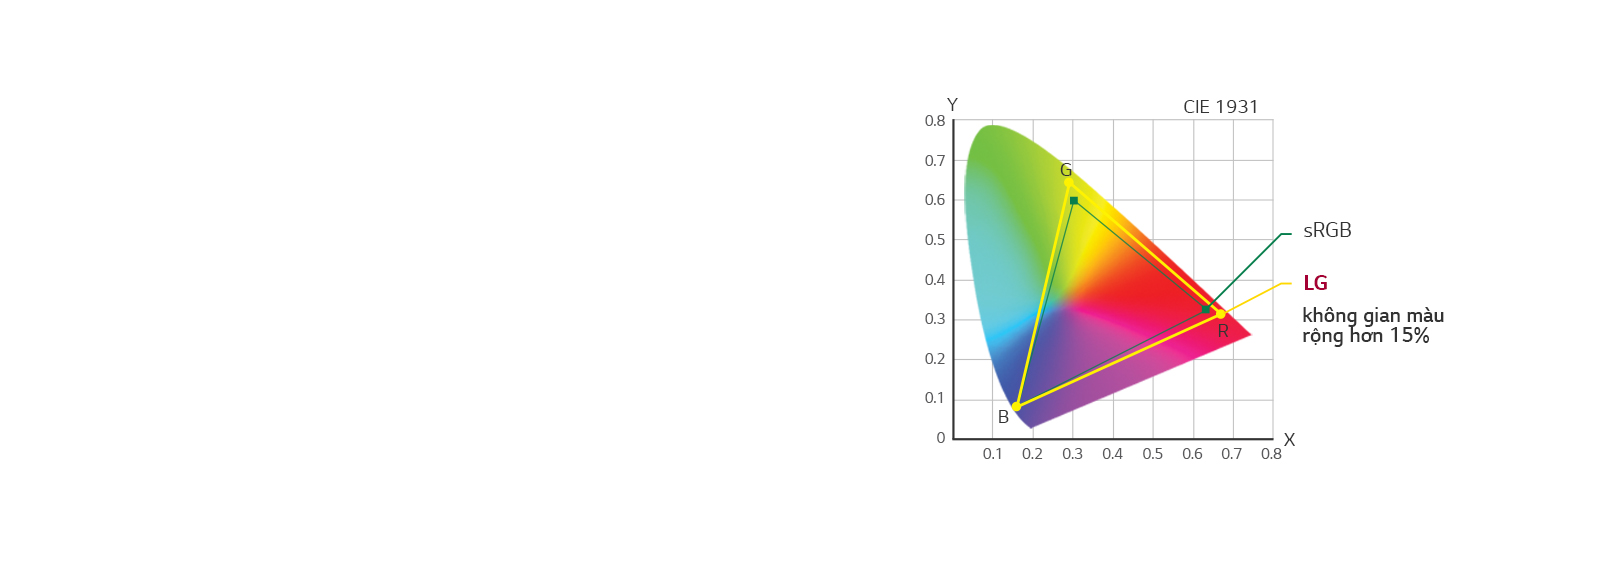 Biểu đồ không gian màu CIE 1931  sRGB / LG, không gian màu rộng hơn +15%